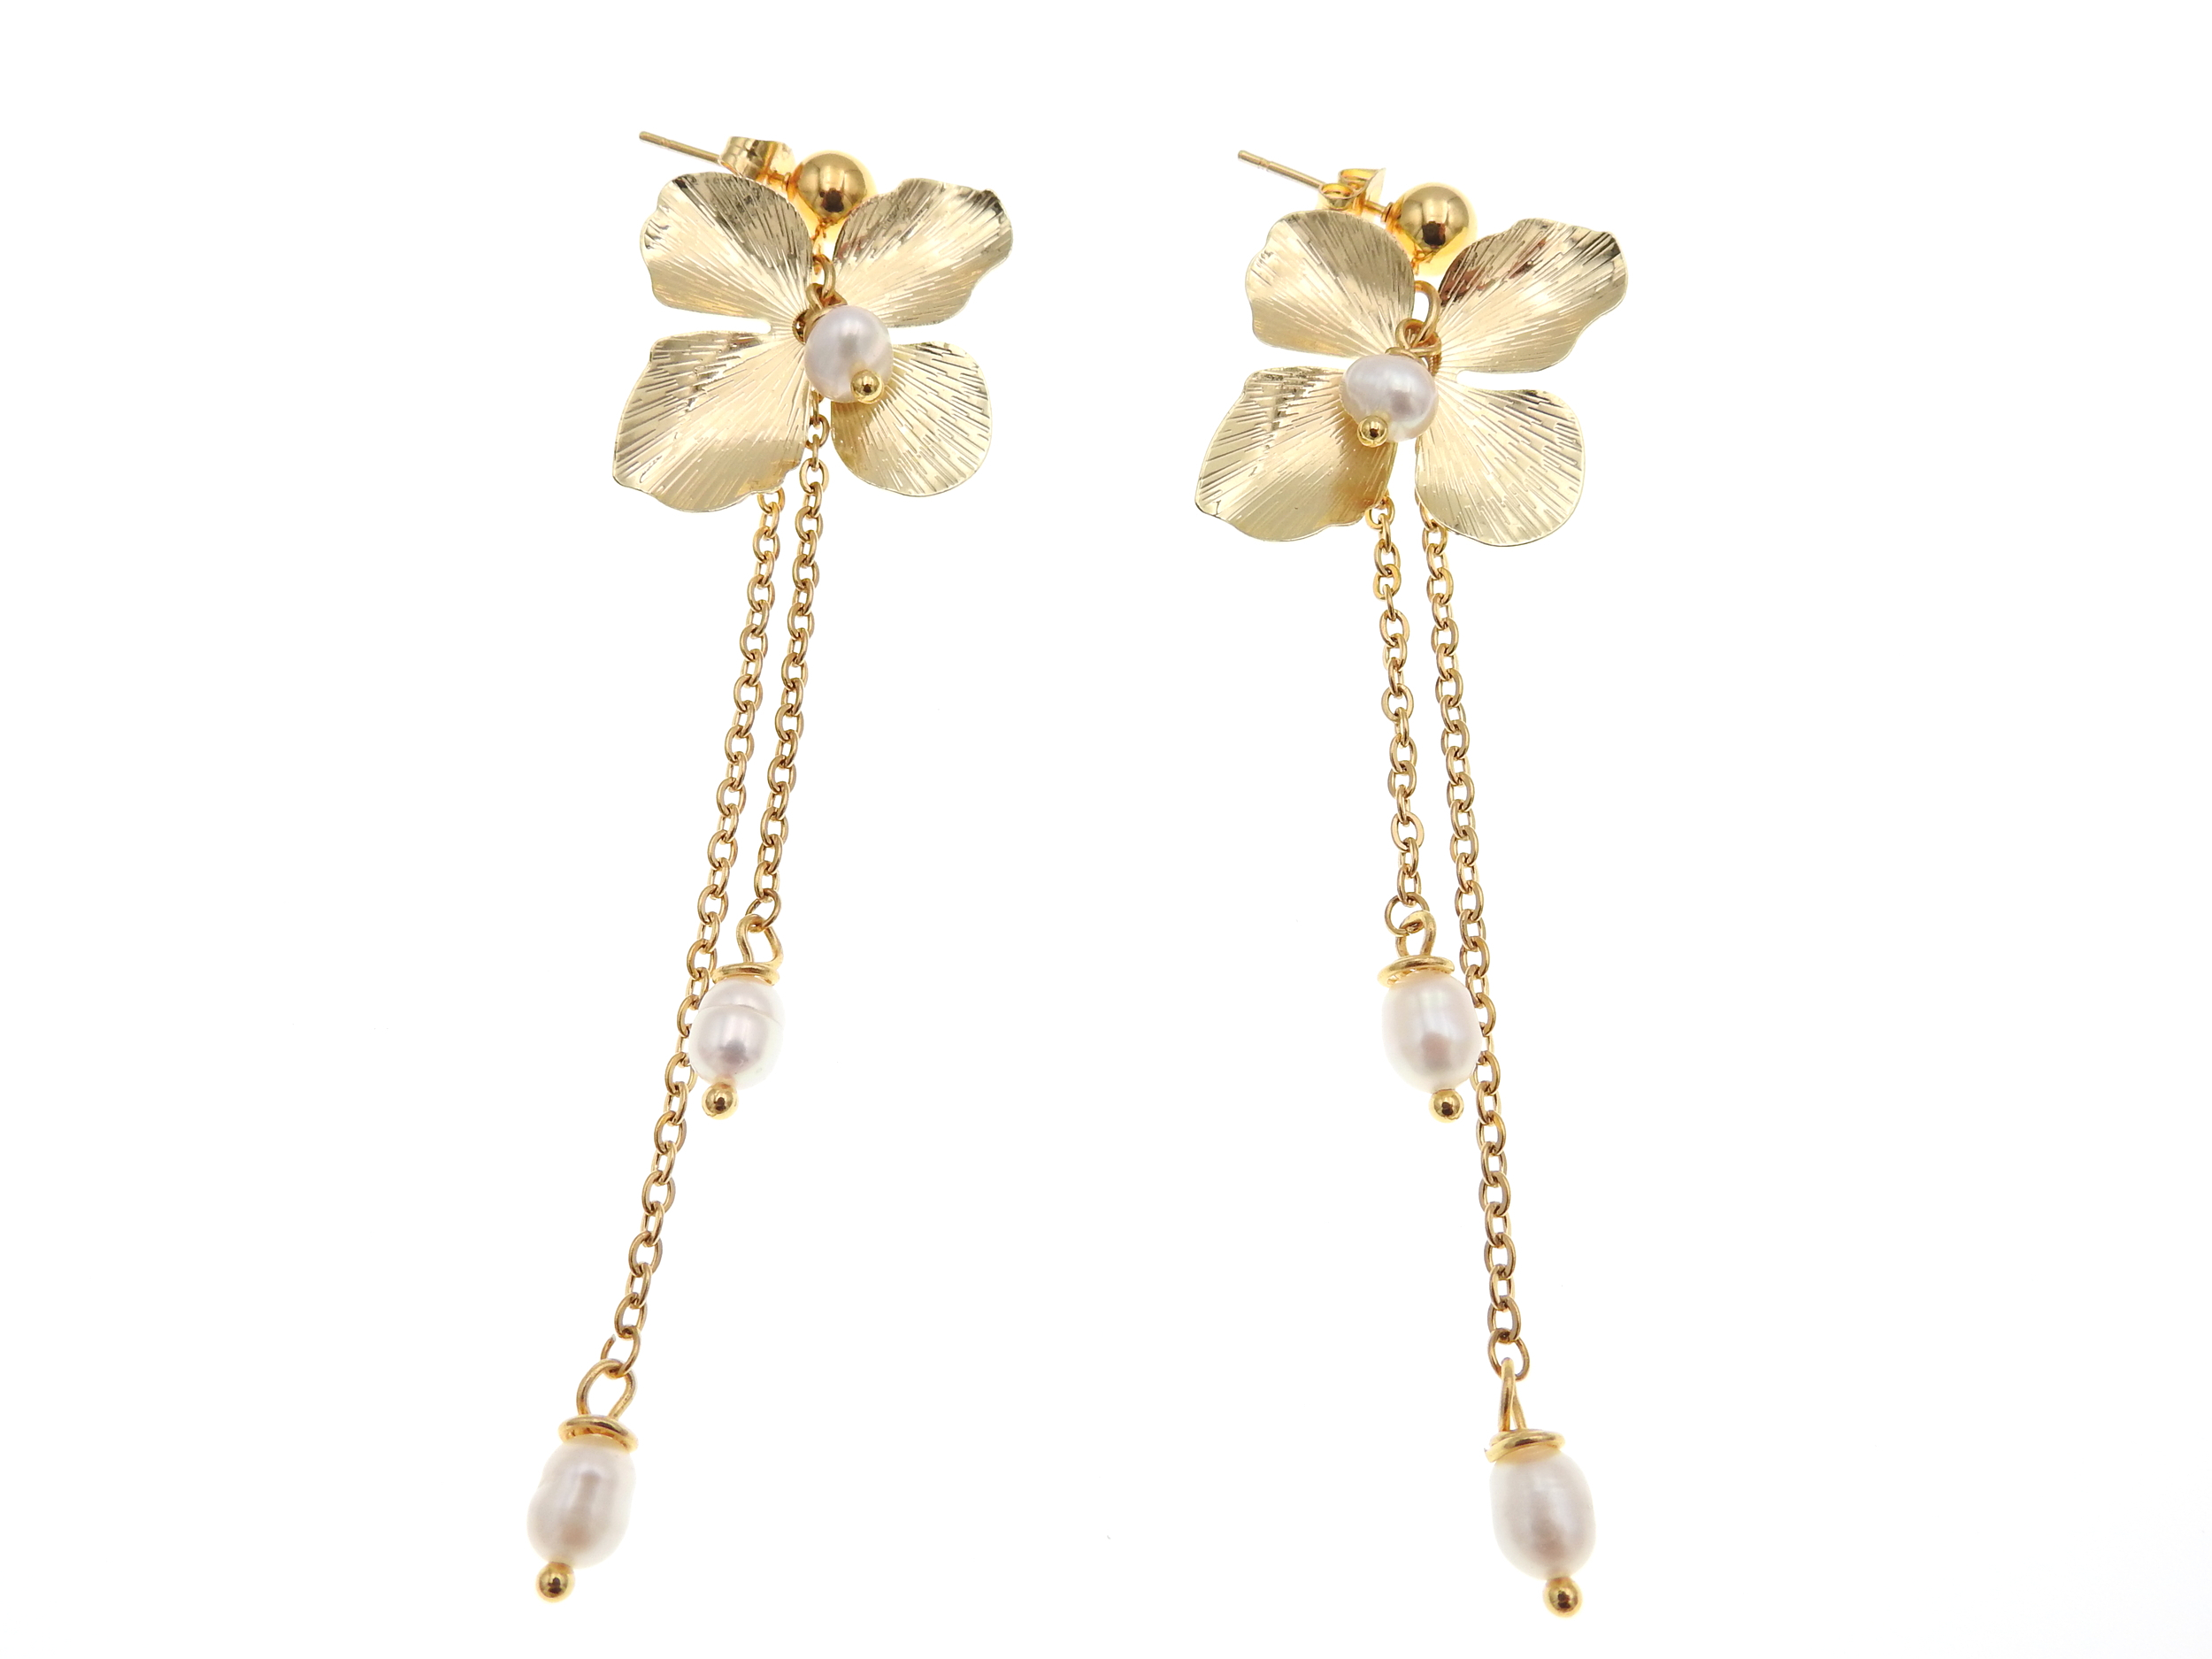 Boucles d'oreilles fleurs dorées de mariage ornées de perles | Boucles d'oreilles fleurs mariage RAQUEL |  MomZelle Bijoux | MMC283